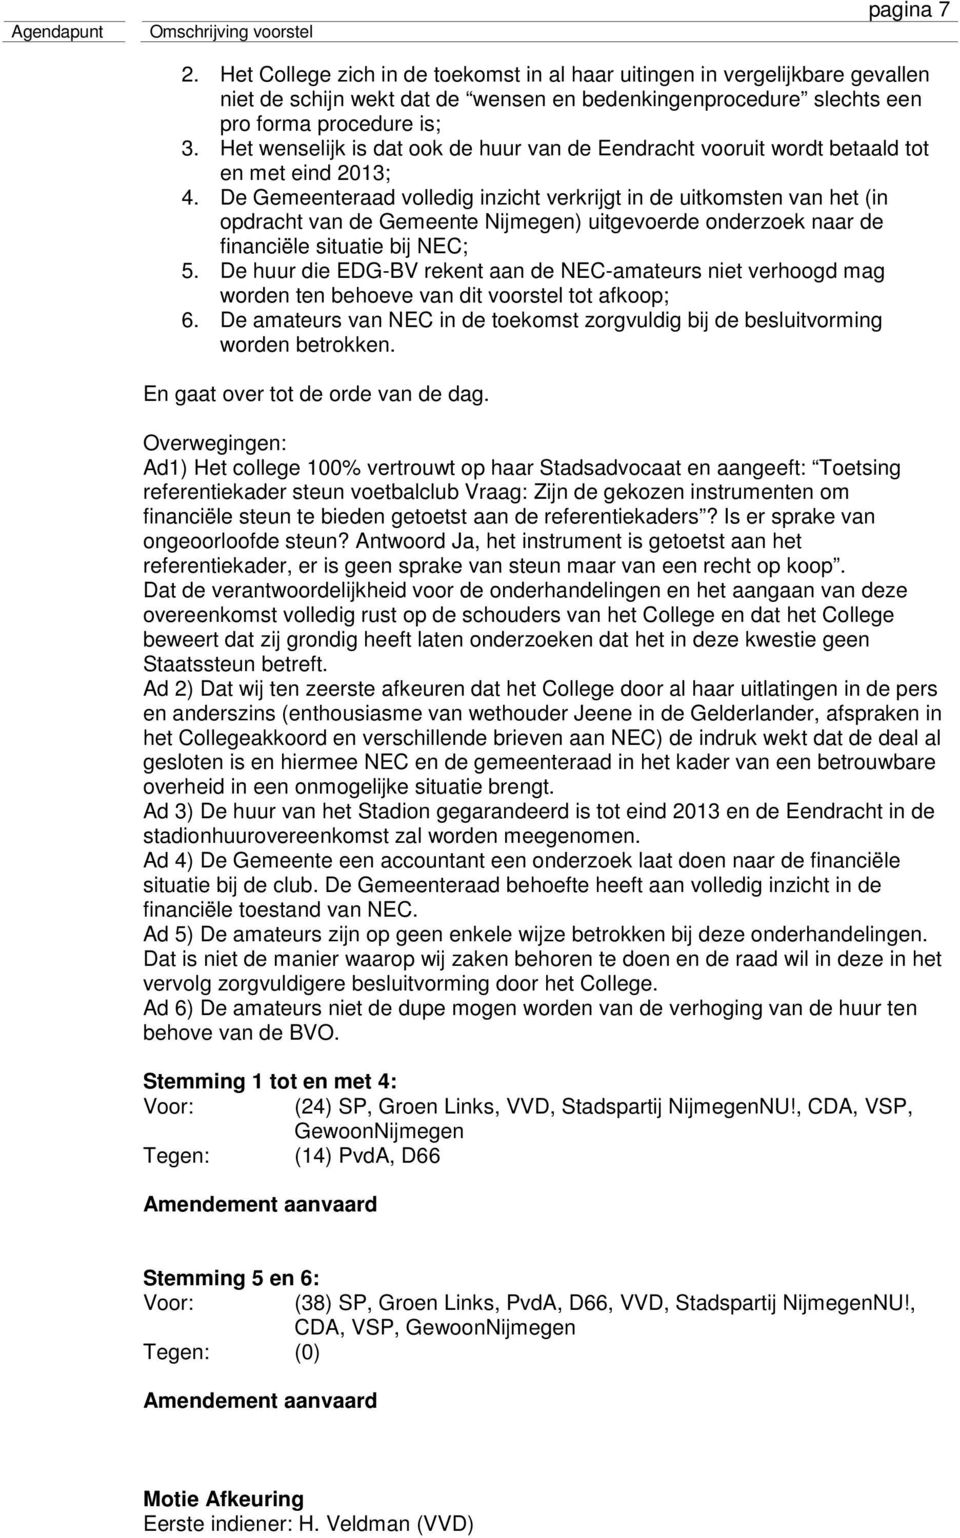 De Gemeenteraad volledig inzicht verkrijgt in de uitkomsten van het (in opdracht van de Gemeente Nijmegen) uitgevoerde onderzoek naar de financiële situatie bij NEC; 5.